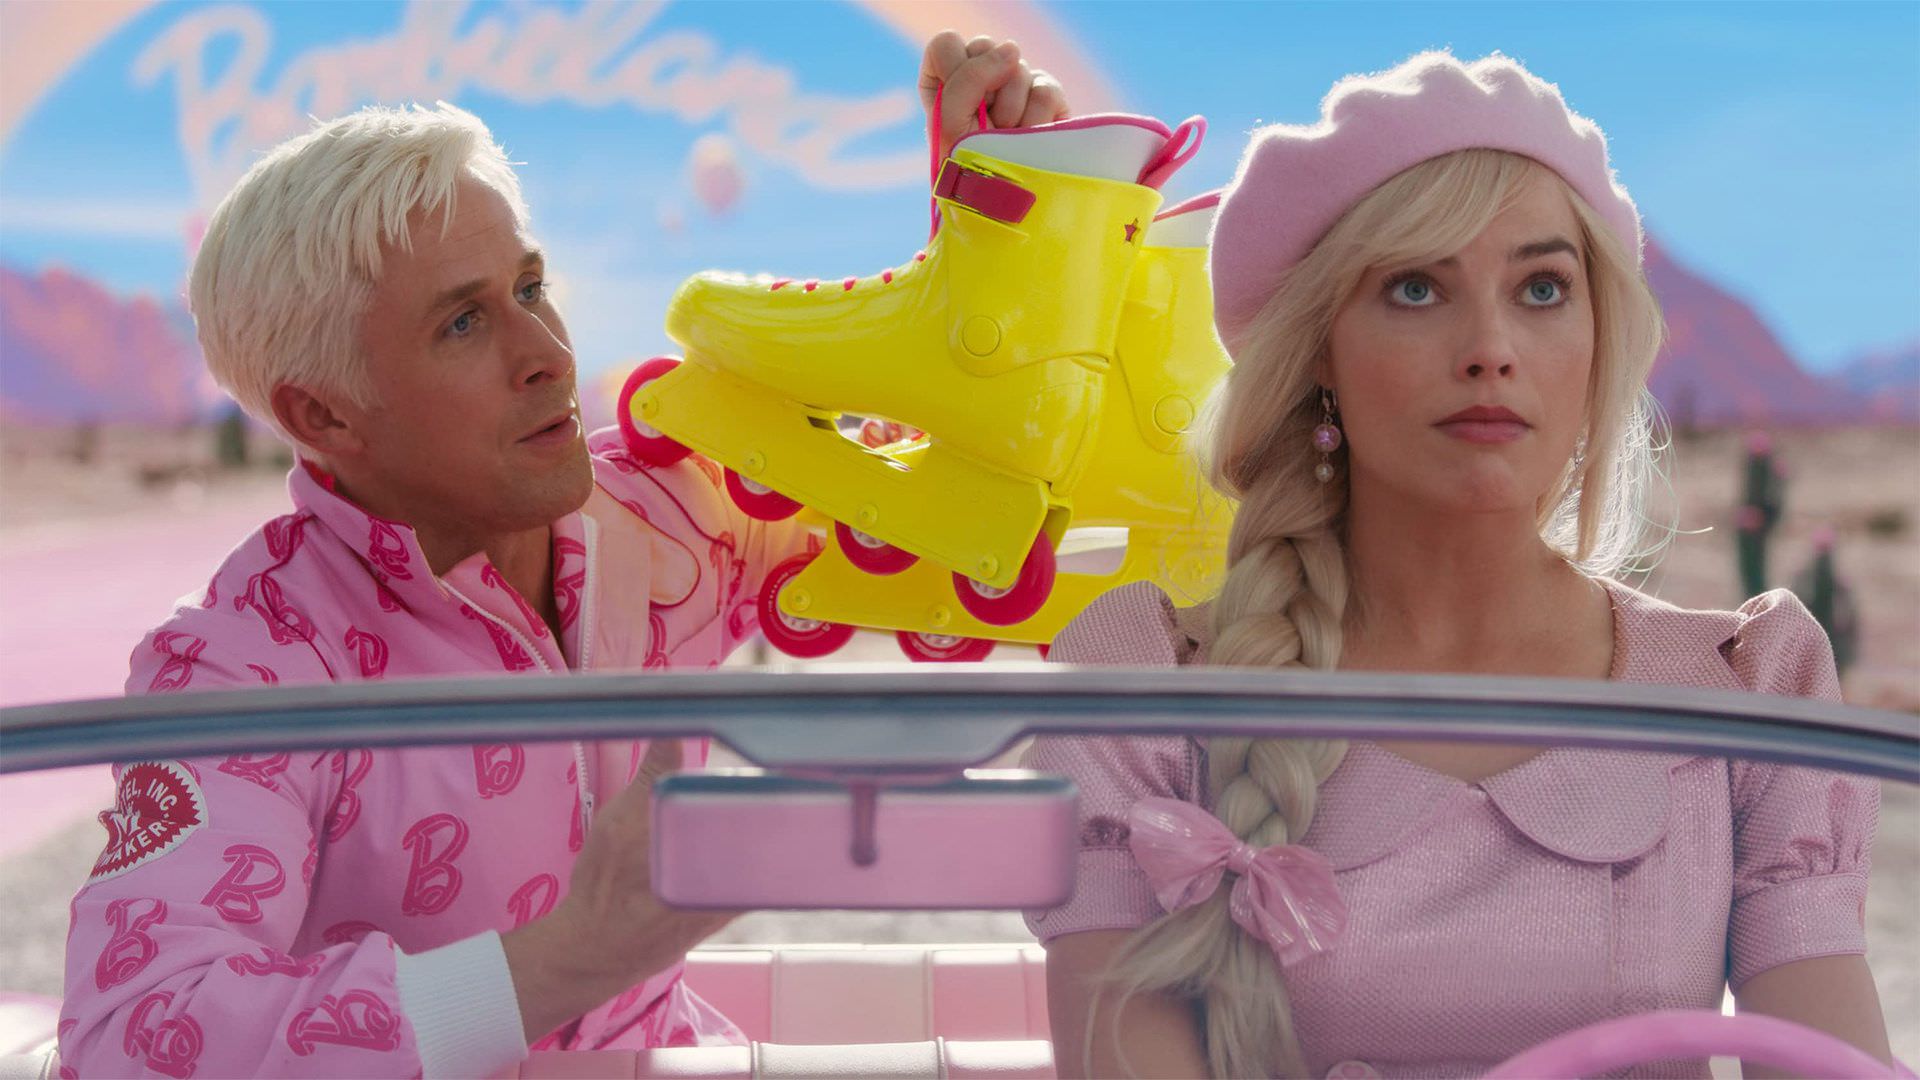 مارگو رابی و رایان گاسلینگ سوار ماشین صورتی رنگ در فیلم Barbie